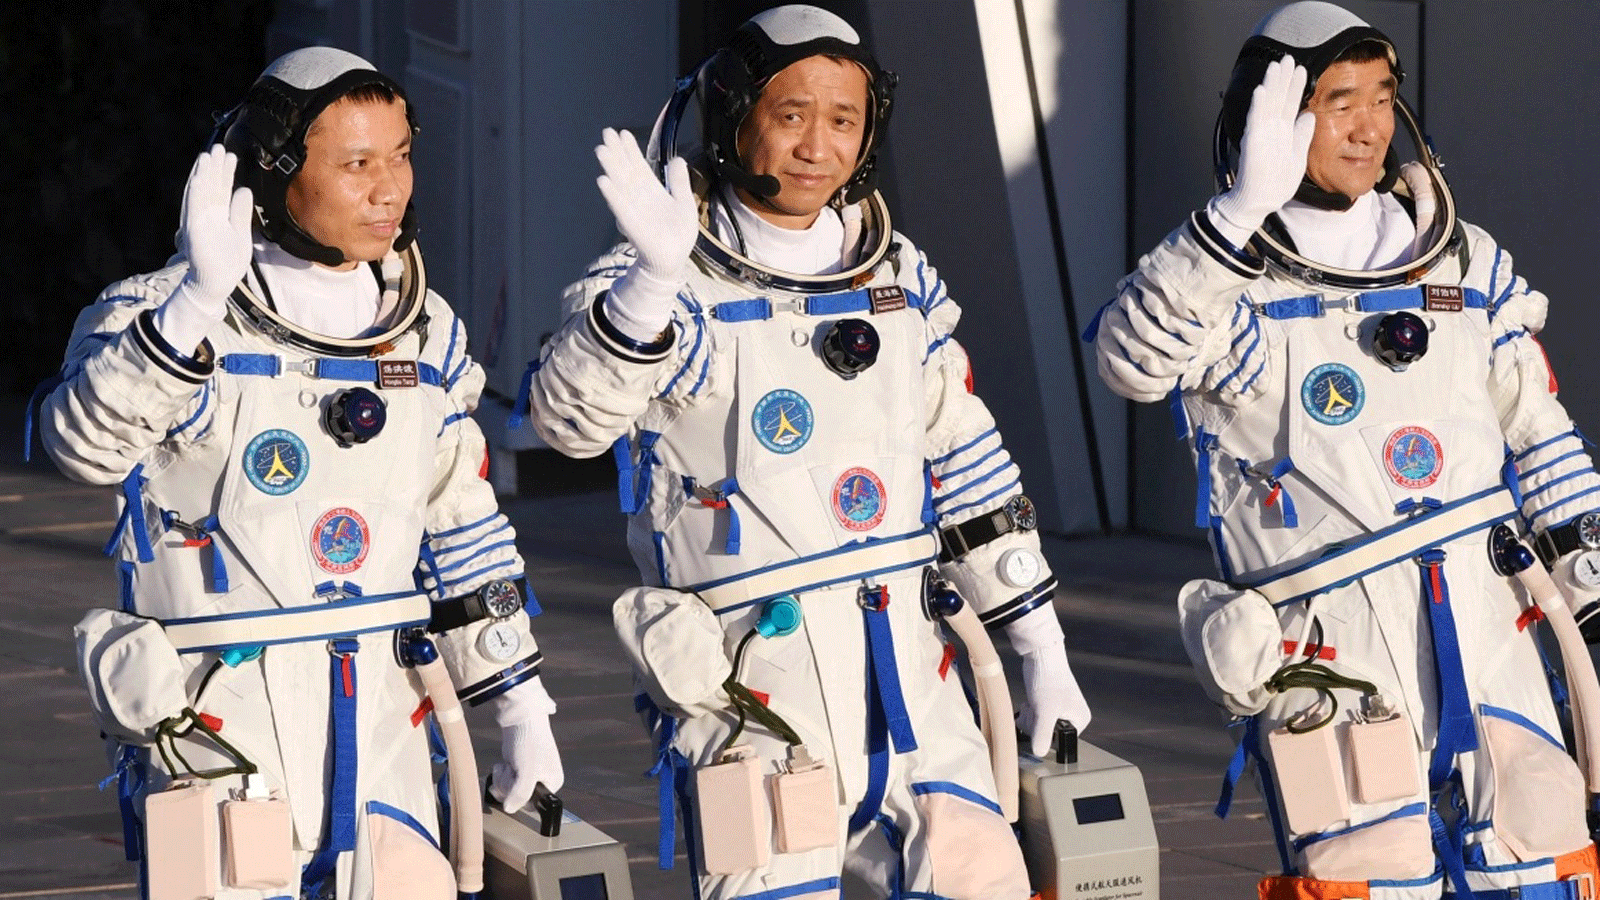 رواد الفضاء تانغ هونغبو، إلى اليسار، وني هاي شنغ، في الوسط، وموجة ليو بومينغ خلال حفل المغادرة قبيل صعودهم إلى المركبة الفضائية شنتشو -12 على متن صاروخ حامل من طراز لونج مارش -2F في مركز جيوتشيوان لإطلاق الأقمار الصناعية في صحراء جوبي في شمال غرب الصين